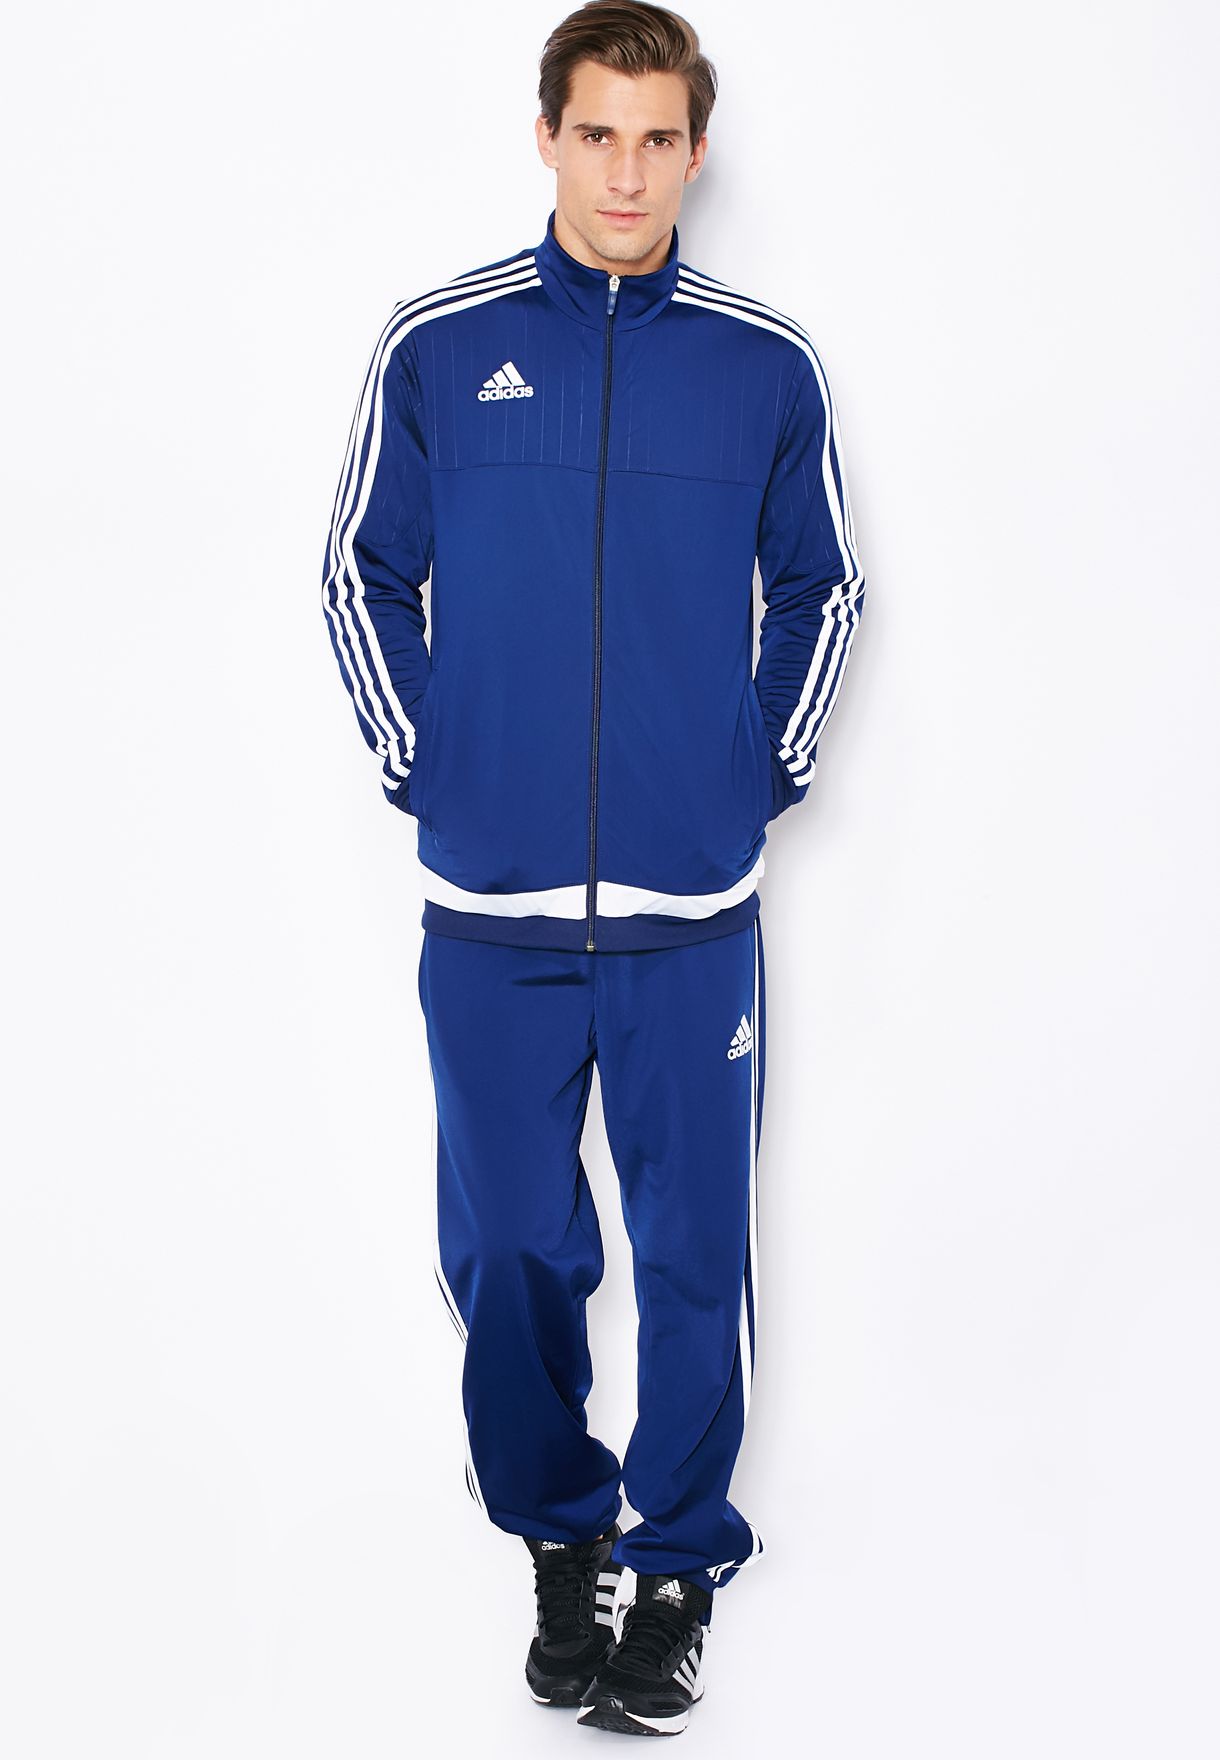 adidas blue suit